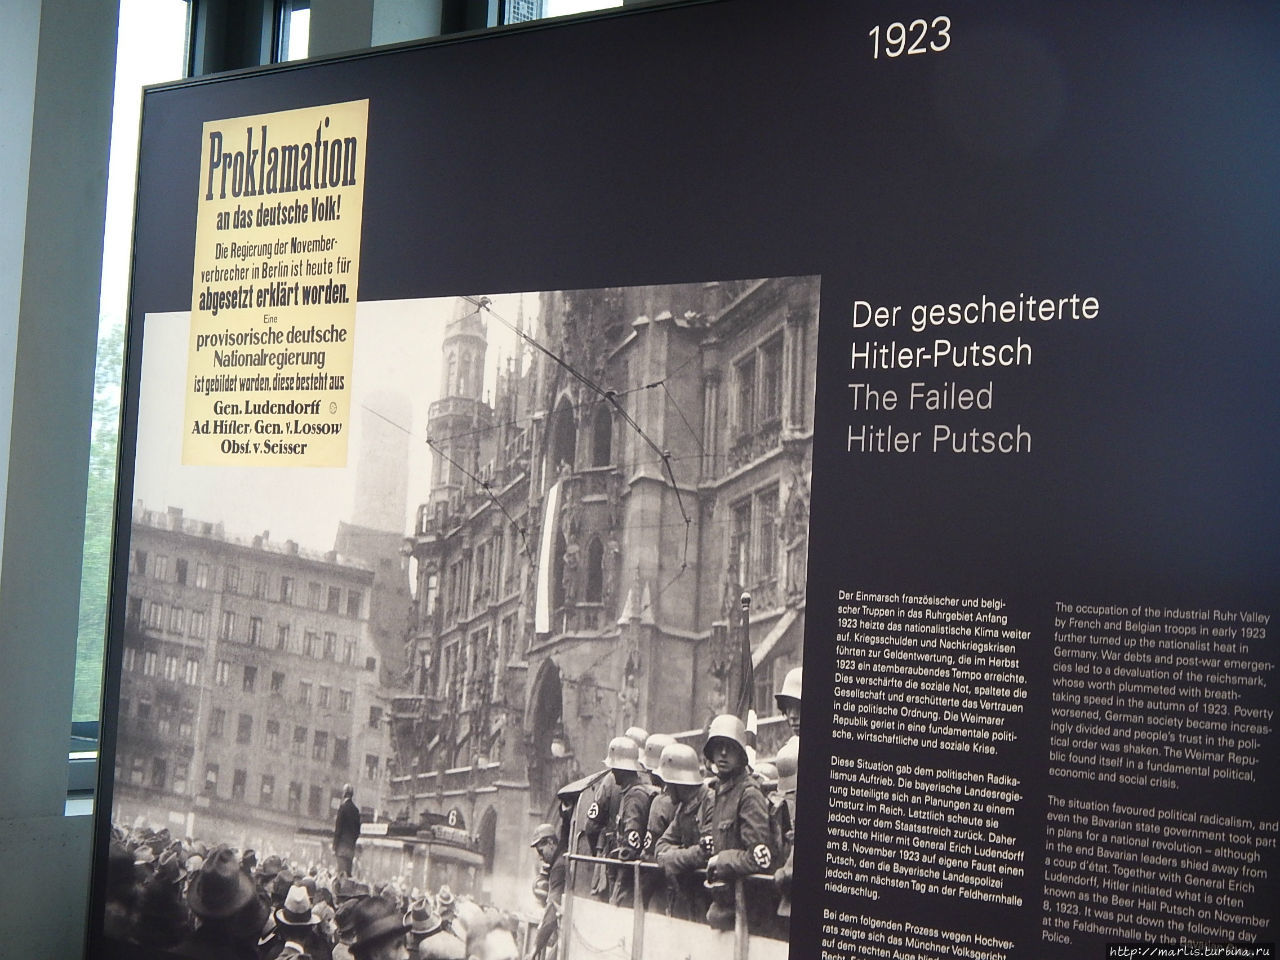 фрагмент экспозиции докуцентра Пивной путч Мюнхен, Германия